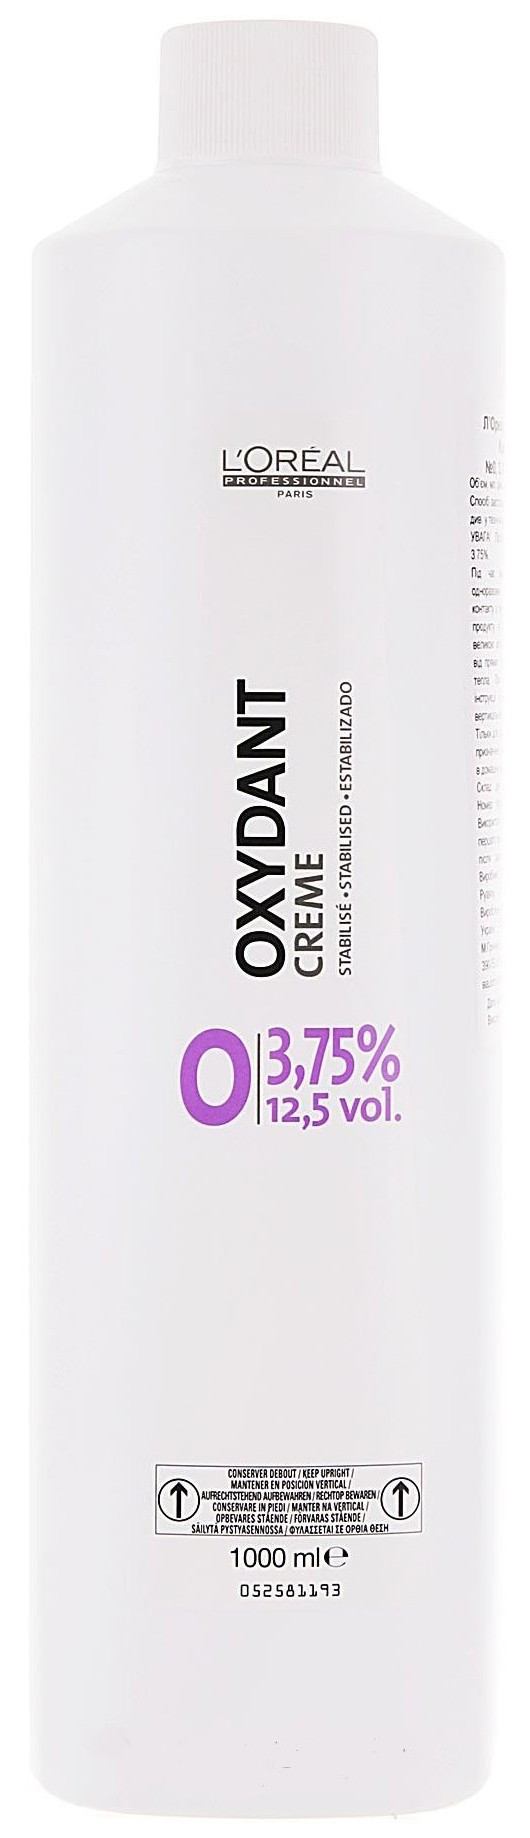 Проявитель L'Oreal Professionnel Oxydant Creame 3,75% 1000 мл проявитель wella professionals welloxon 12% 1000 мл